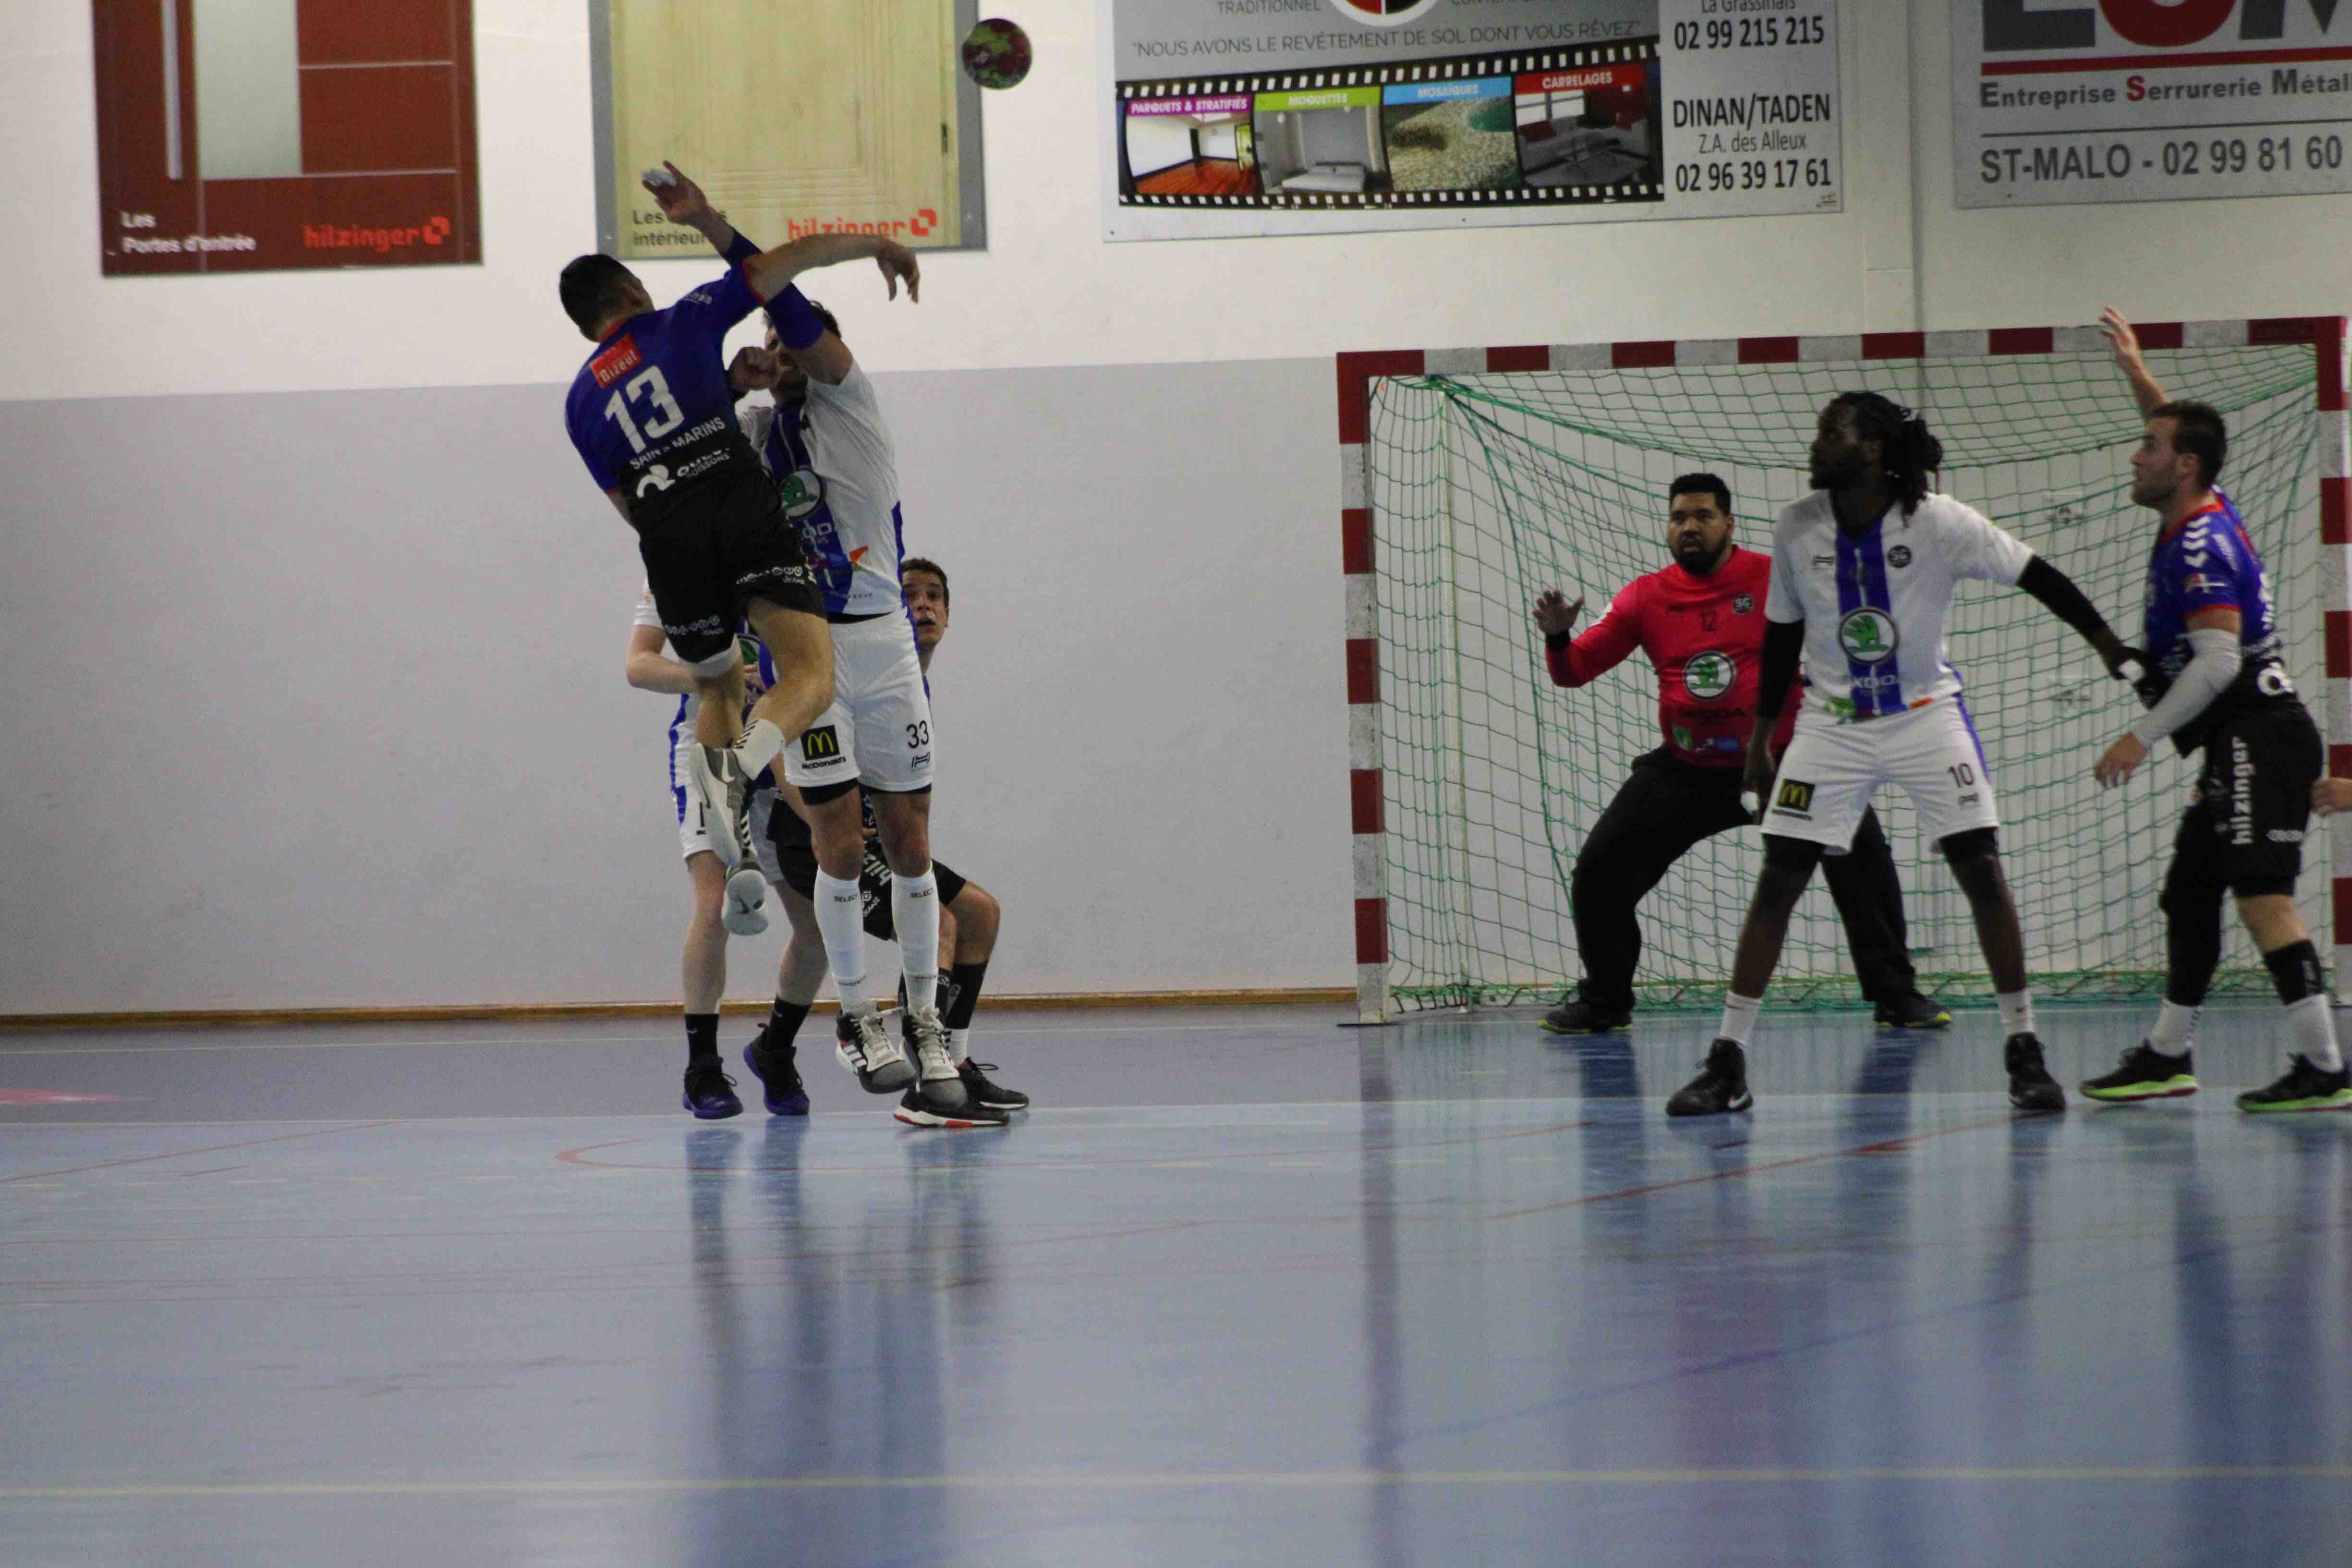 2019nov23 CJF hb _ SC handball (100)